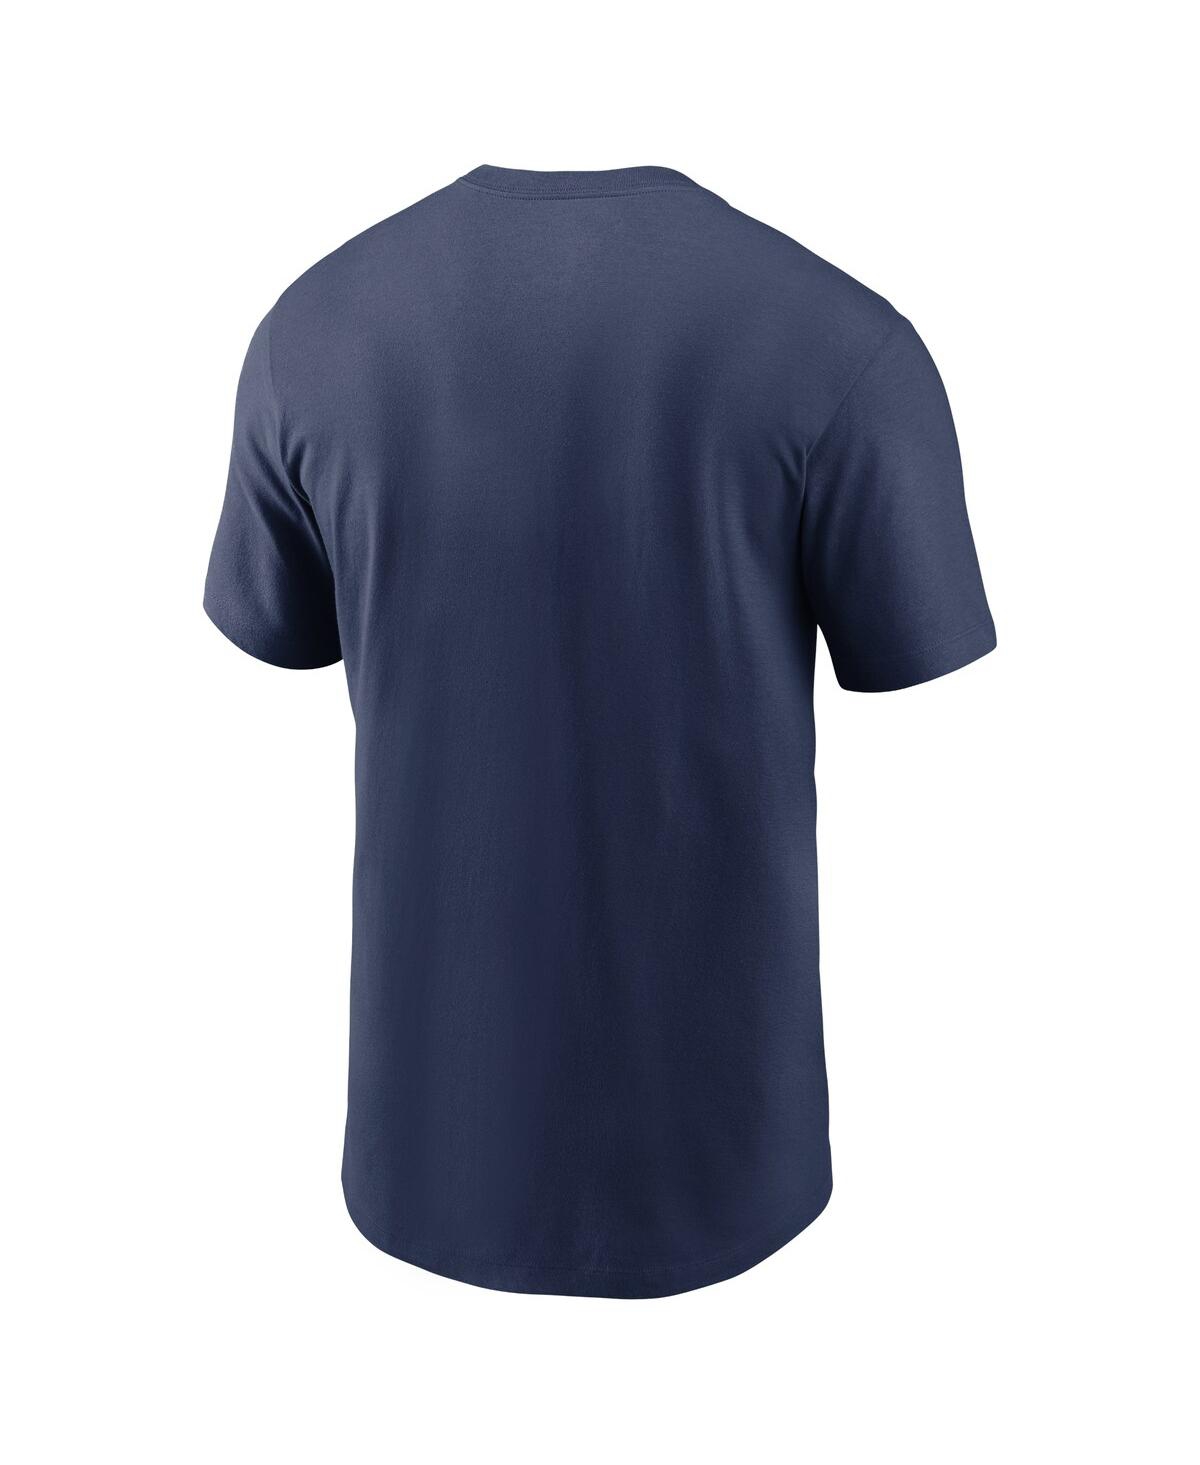 Shop Nike Men's  Navy Milwaukee Brewers Brewing Home Runs Local Team T-shirt